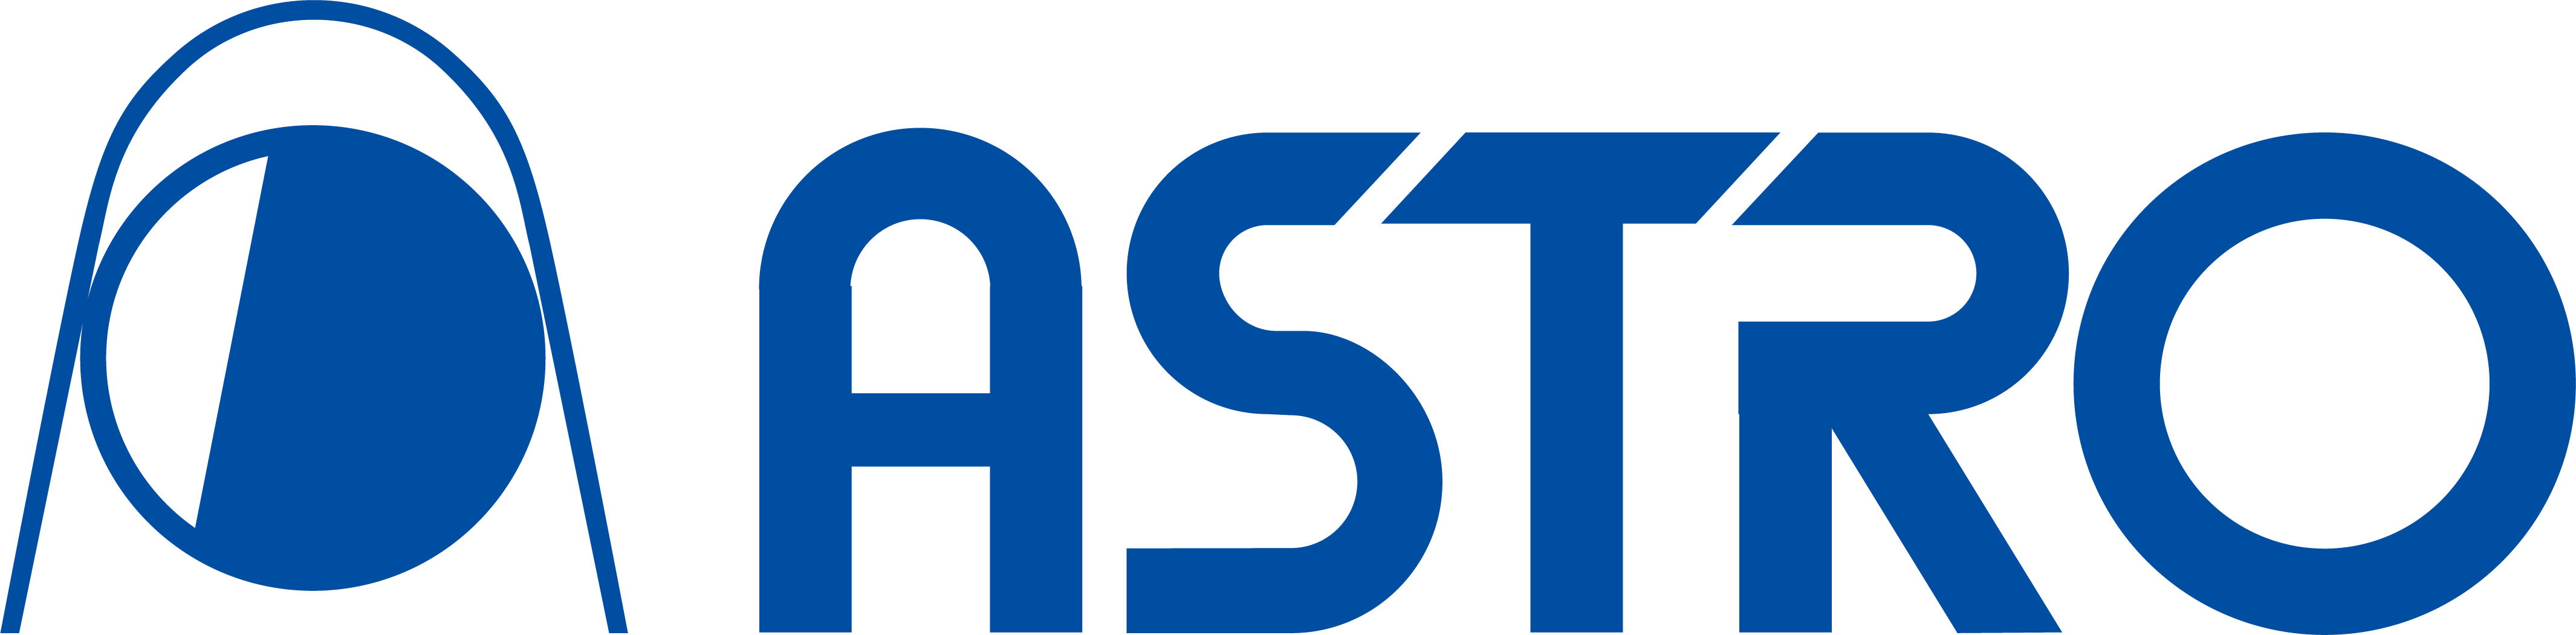 Astro_Design